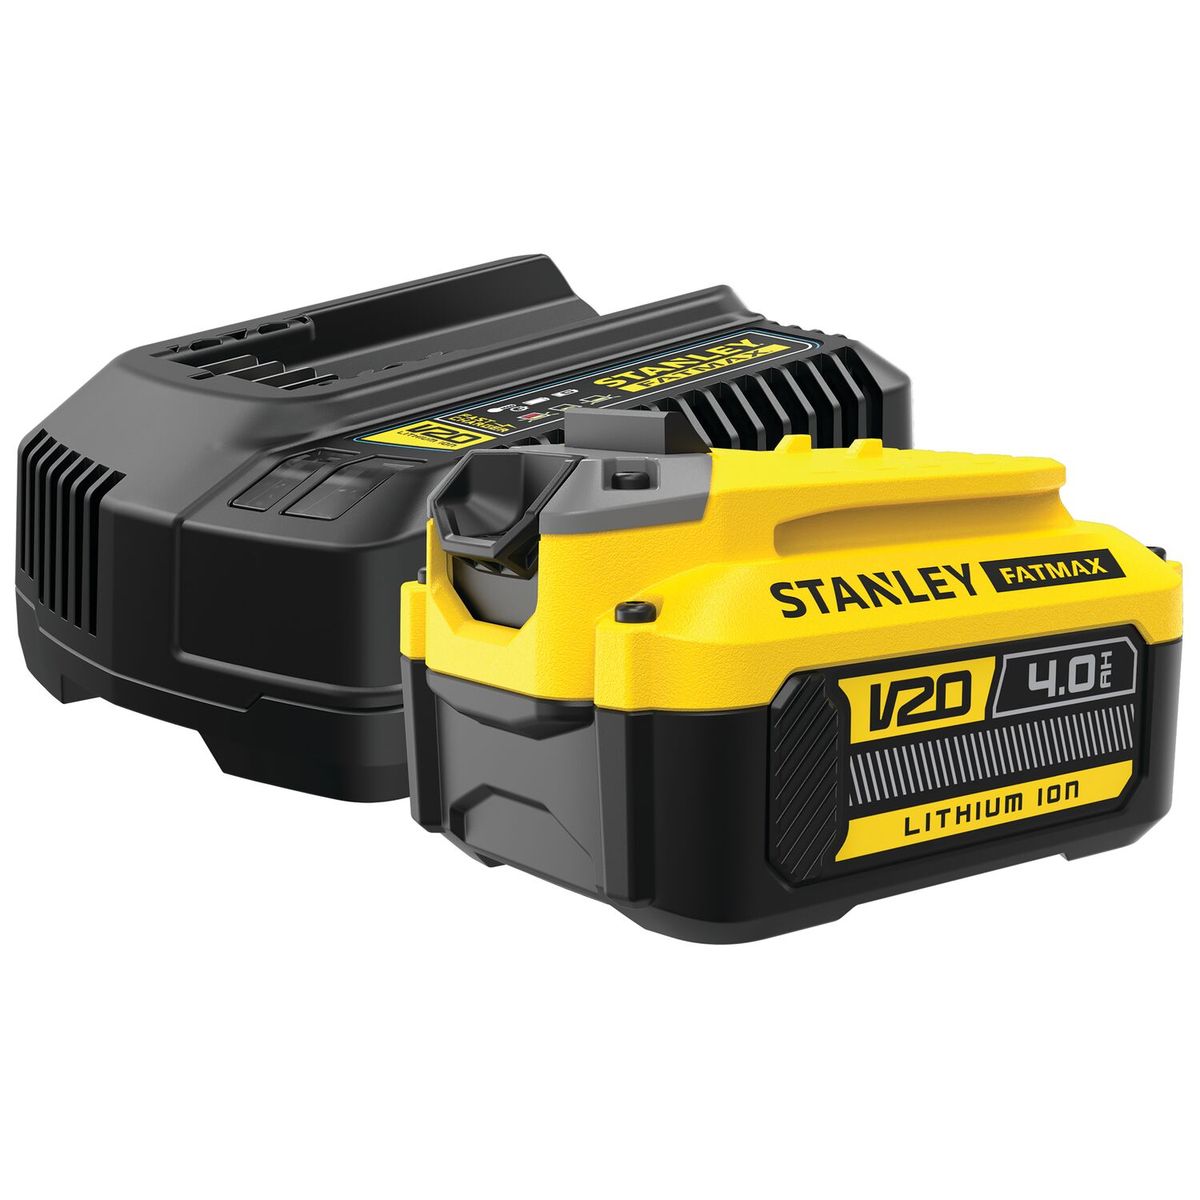 STANLEY FATMAX V20 4 AH Starter Kit - 1 18V Battery + Charger